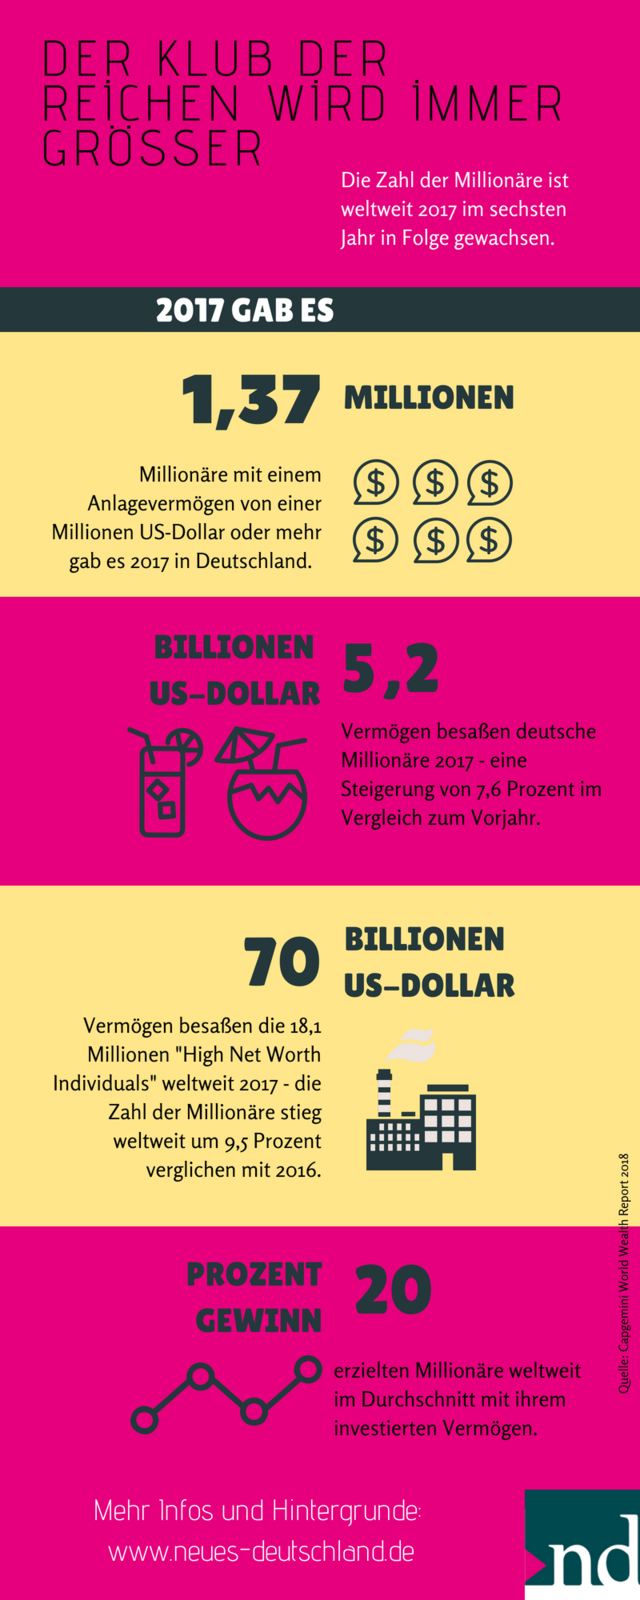 Vermögen auf Rekordwert: Millionäre besaßen 2017 weltweit über 70 Billionen US-Dollar